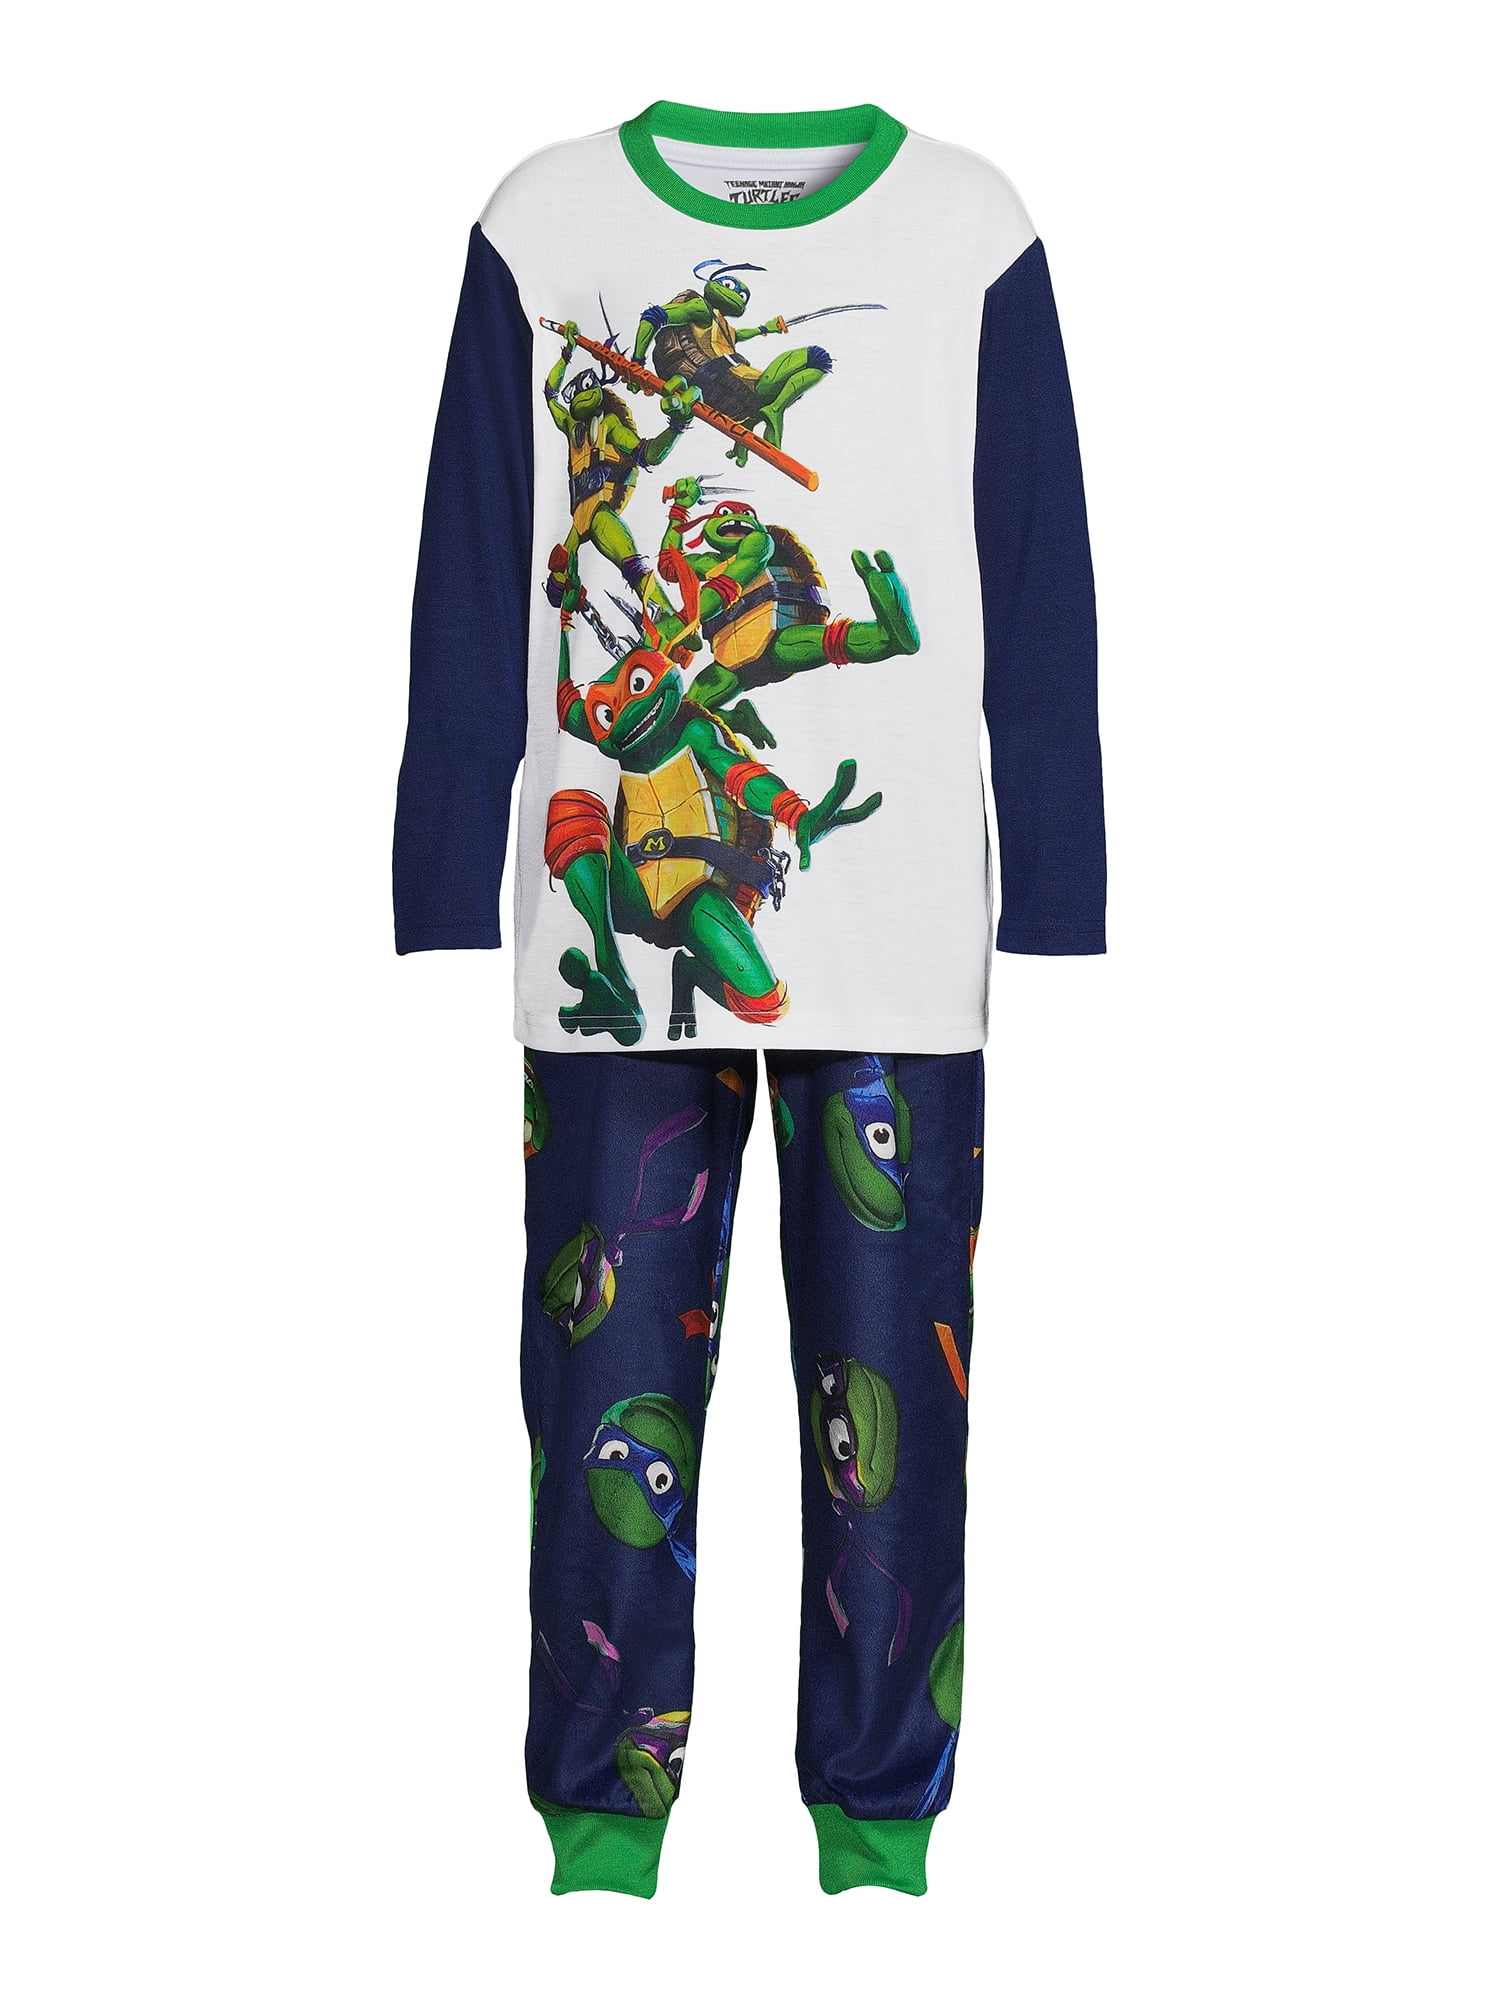 Mad Dogs 🐢 on X: Boys' Teenage Mutant Ninja Turtles 4pc Pajama Set -  Green   / X